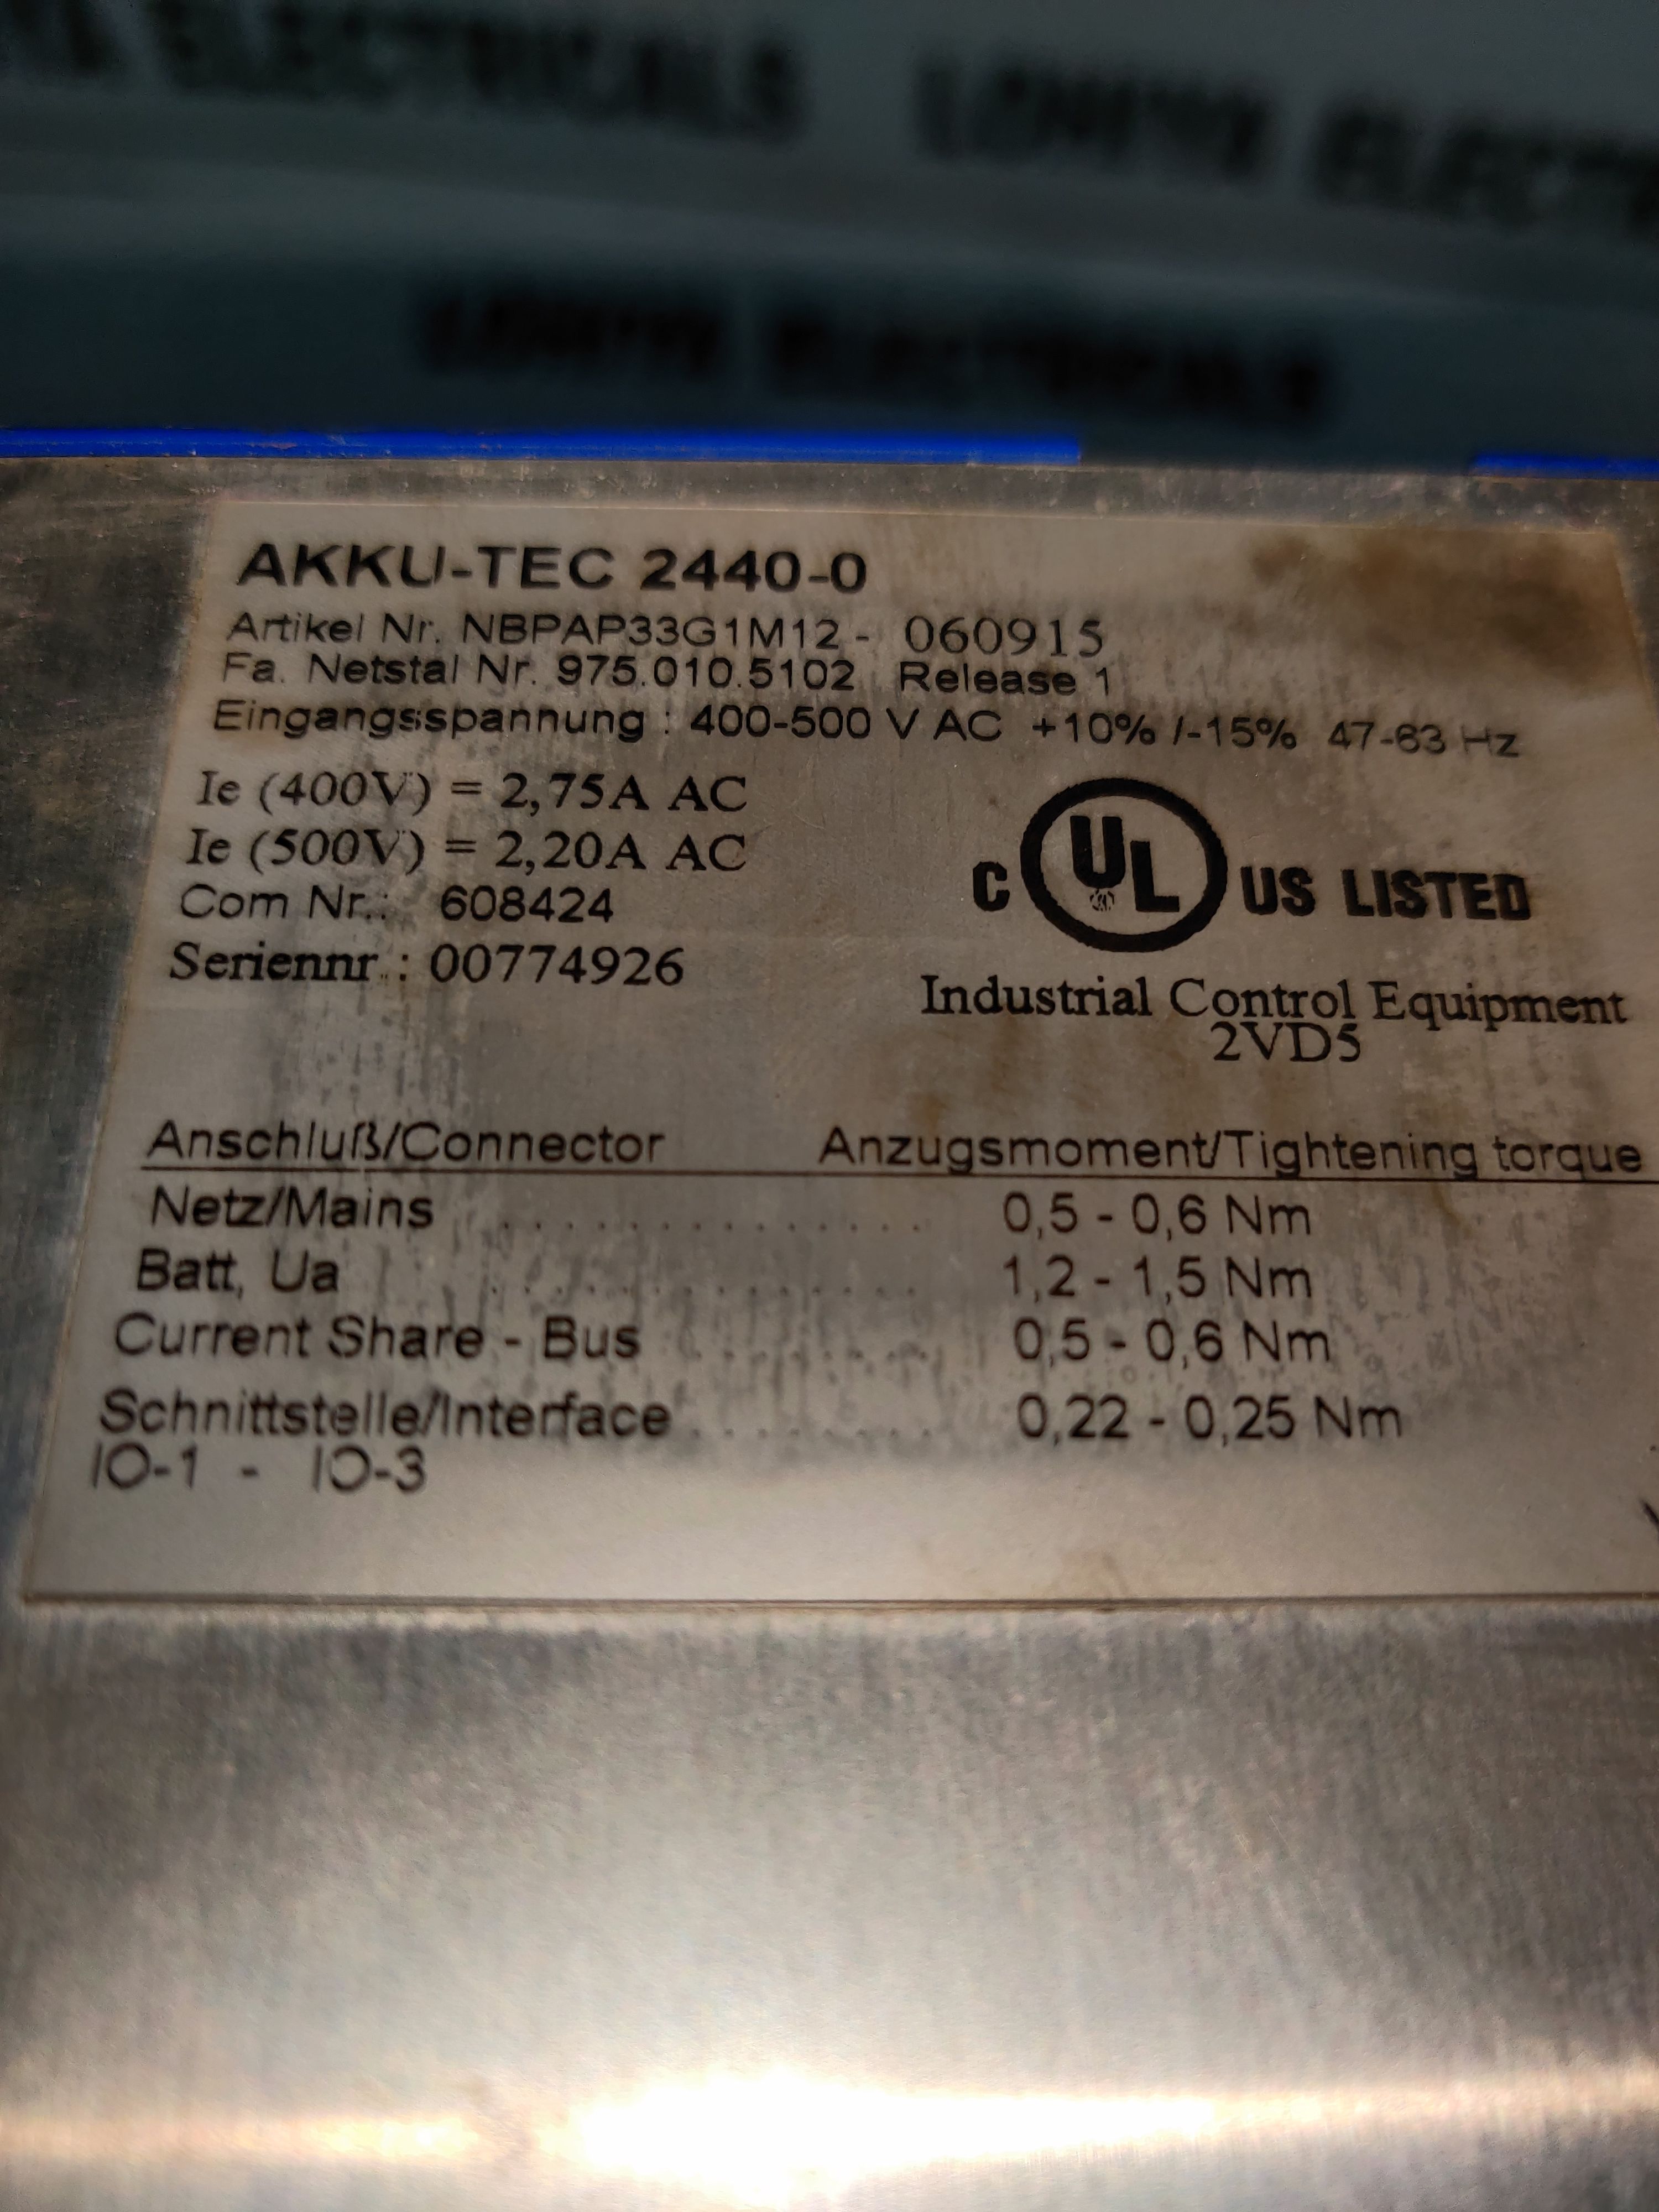 AKKU-TEC 2440-0-060915 DC POWER SUPPLY MODULE